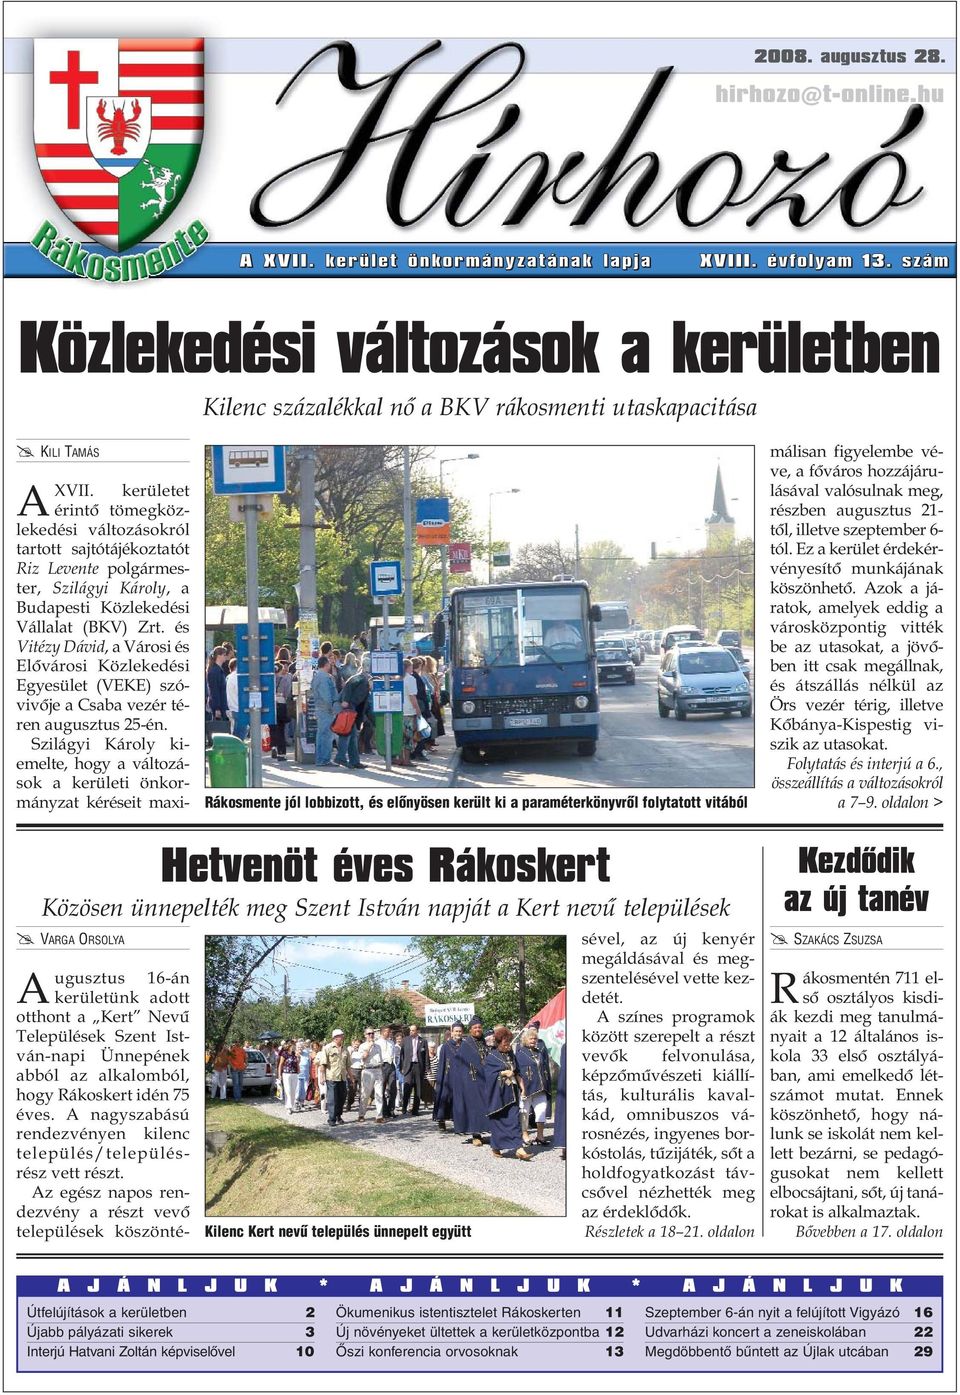 kerületet érintõ tömegközlekedési változásokról tartott sajtótájékoztatót Riz Levente polgármester, Szilágyi Károly, a Budapesti Közlekedési Vállalat (BKV) Zrt.